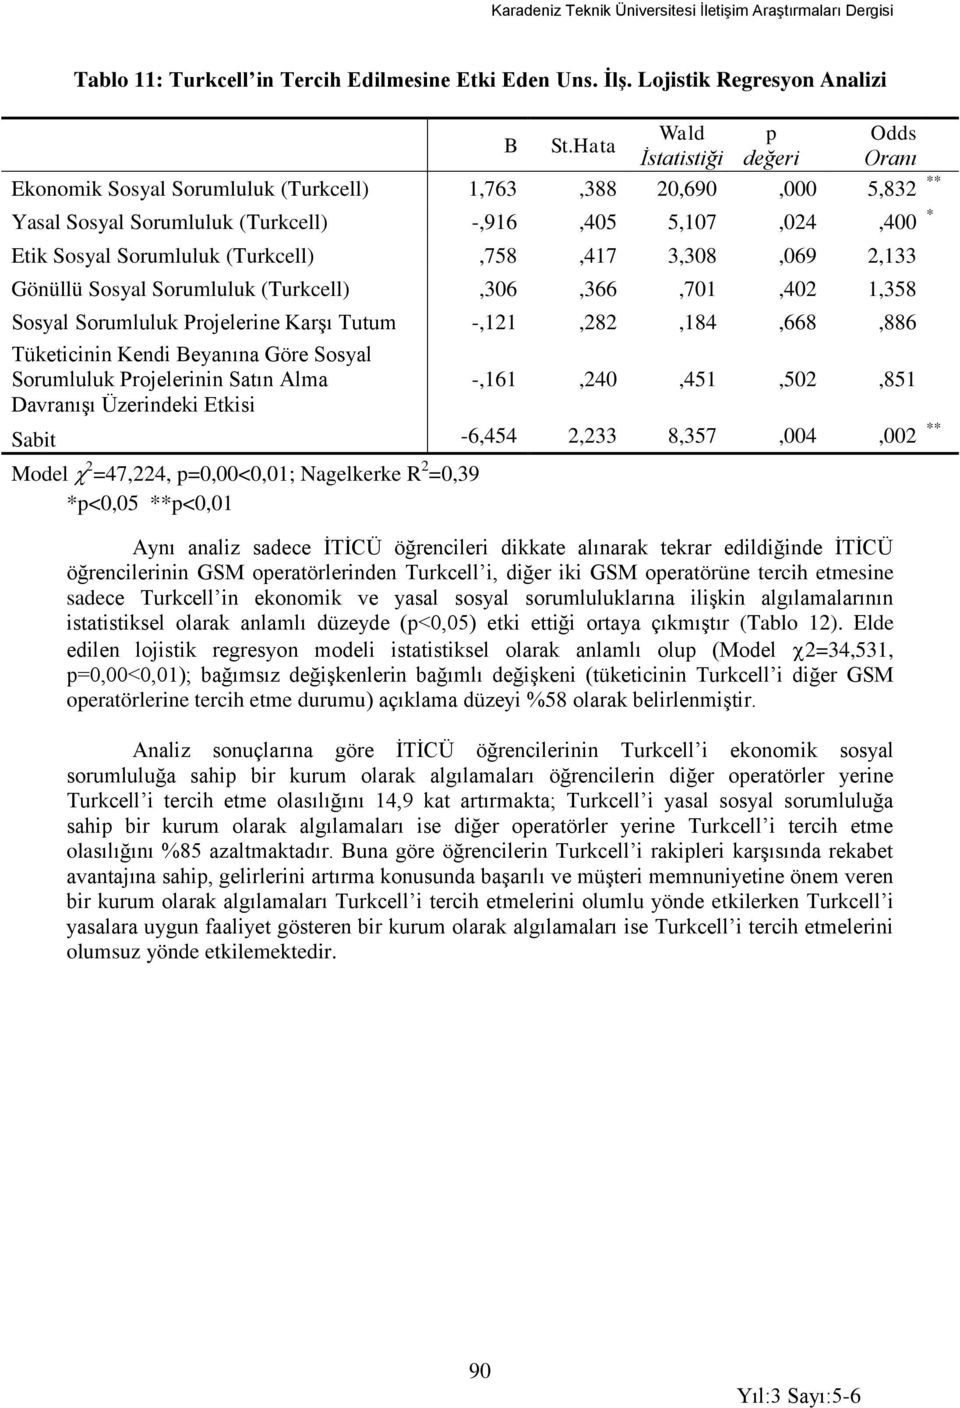 (Turkcell),758,417 3,308,069 2,133 Gönüllü Sosyal Sorumluluk (Turkcell),306,366,701,402 1,358 Sosyal Sorumluluk Projelerine Karşı Tutum -,121,282,184,668,886 Tüketicinin Kendi Beyanına Göre Sosyal